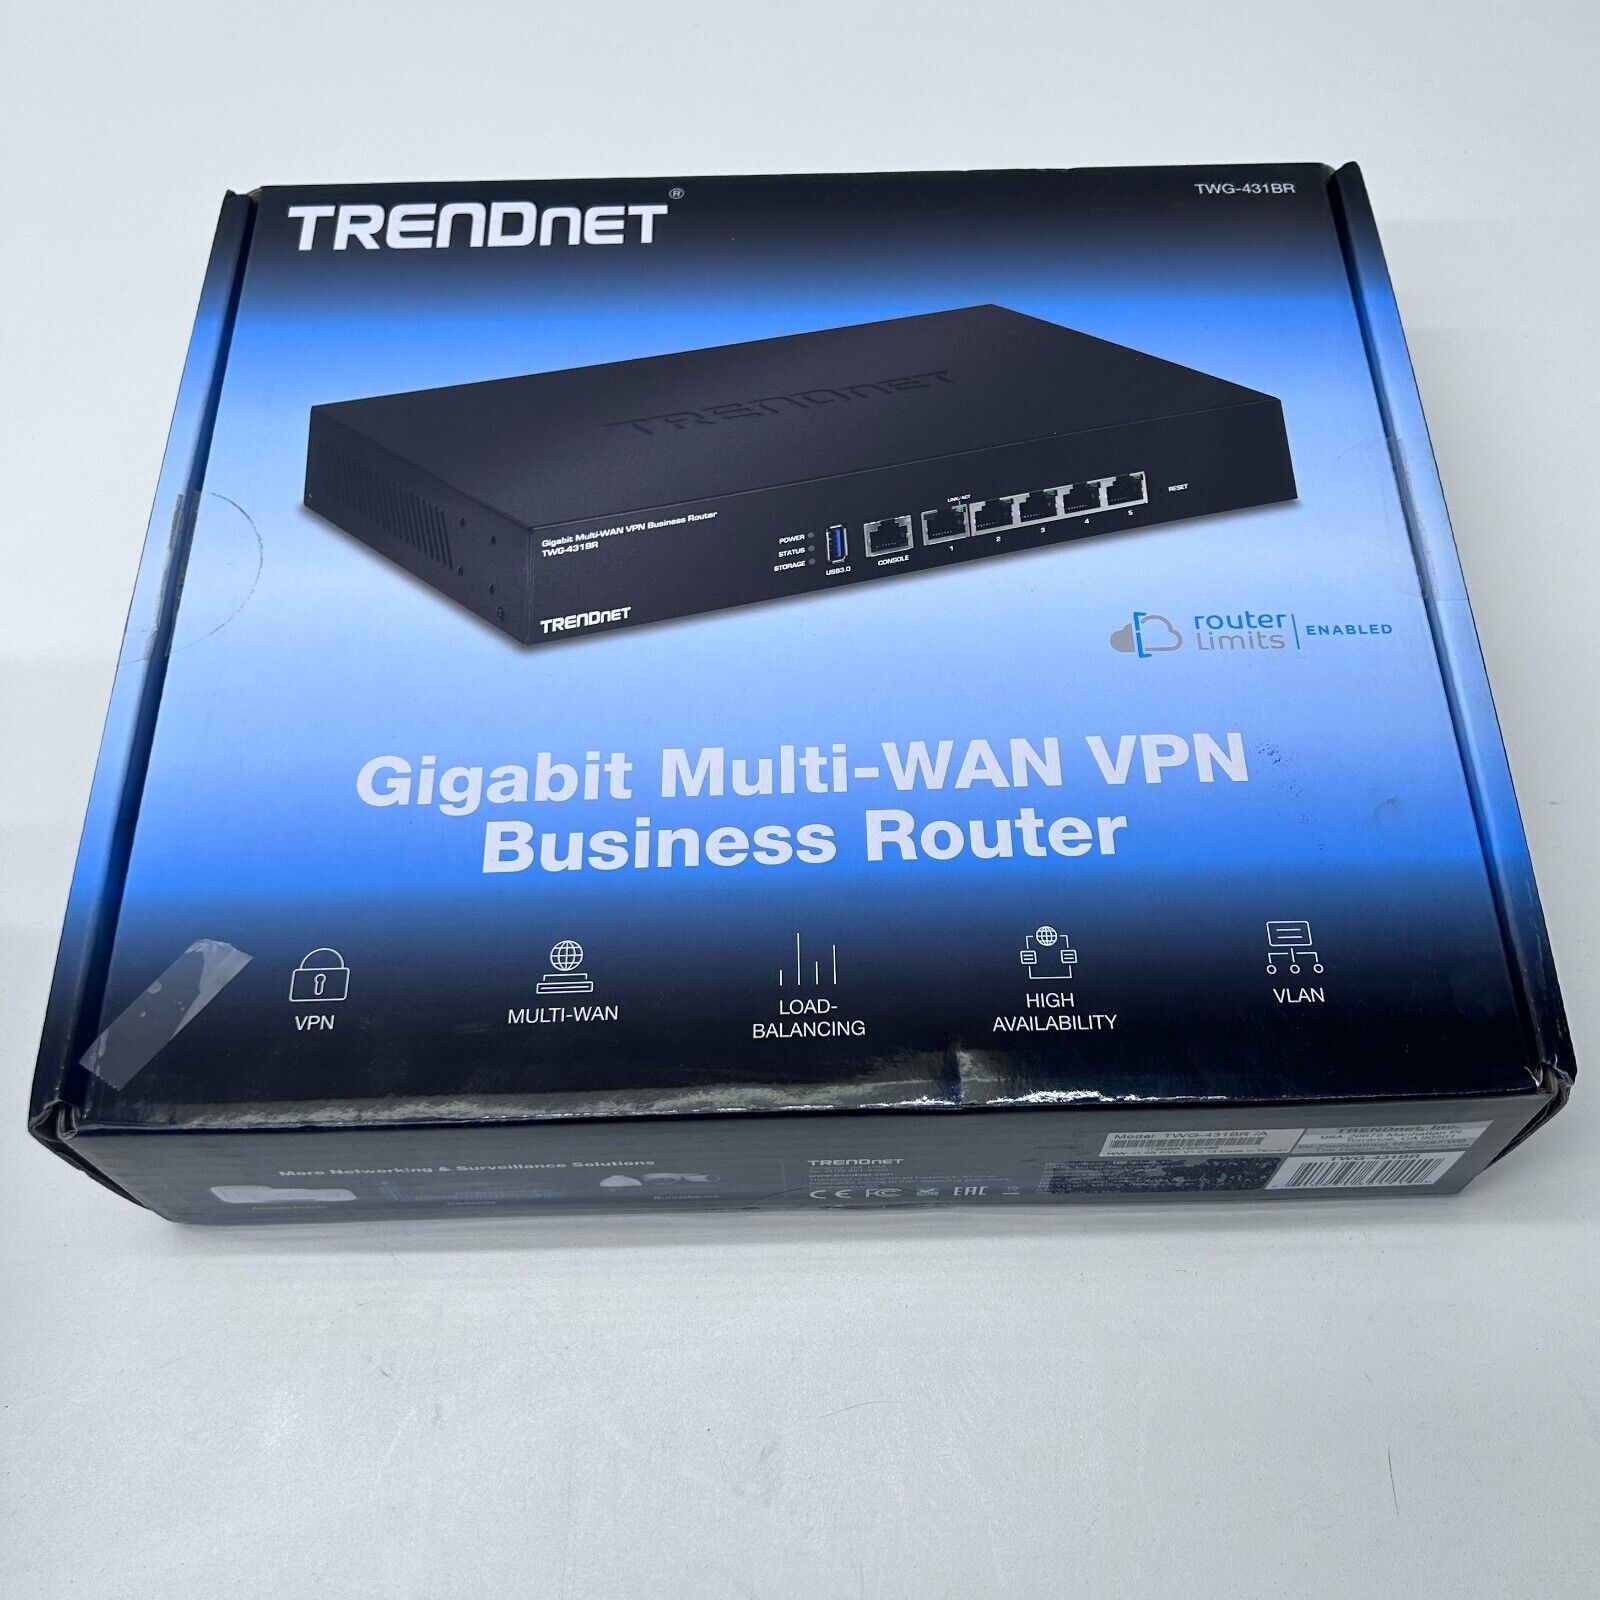 TRENDnet Gigabit Multi-Wan VPN Business Router Model TWG-431BR